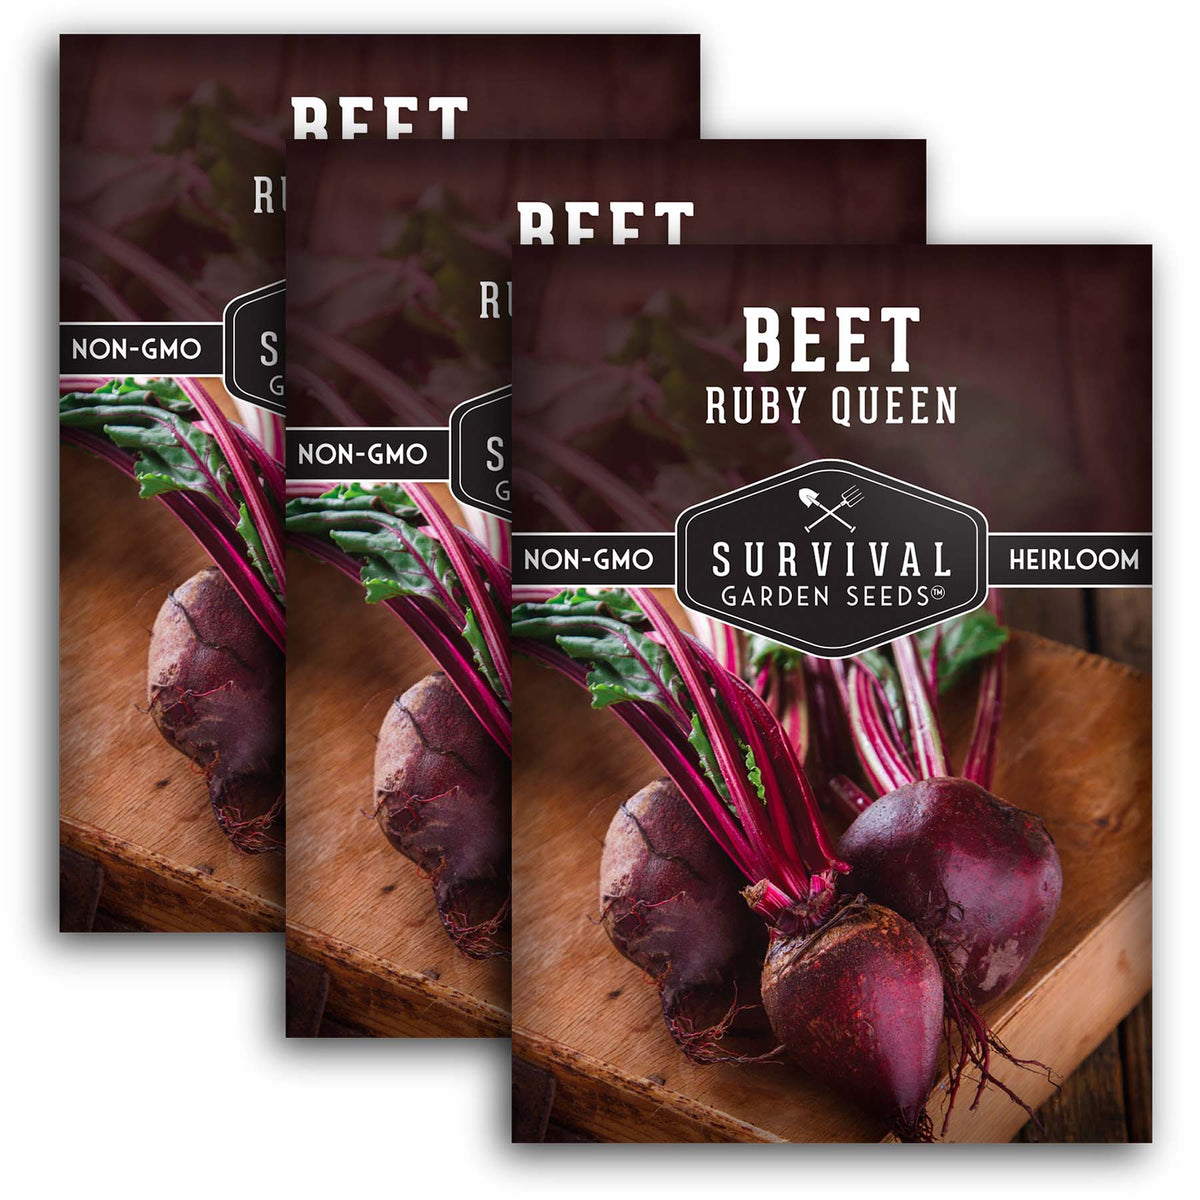 Ruby Queen Beet Seeds